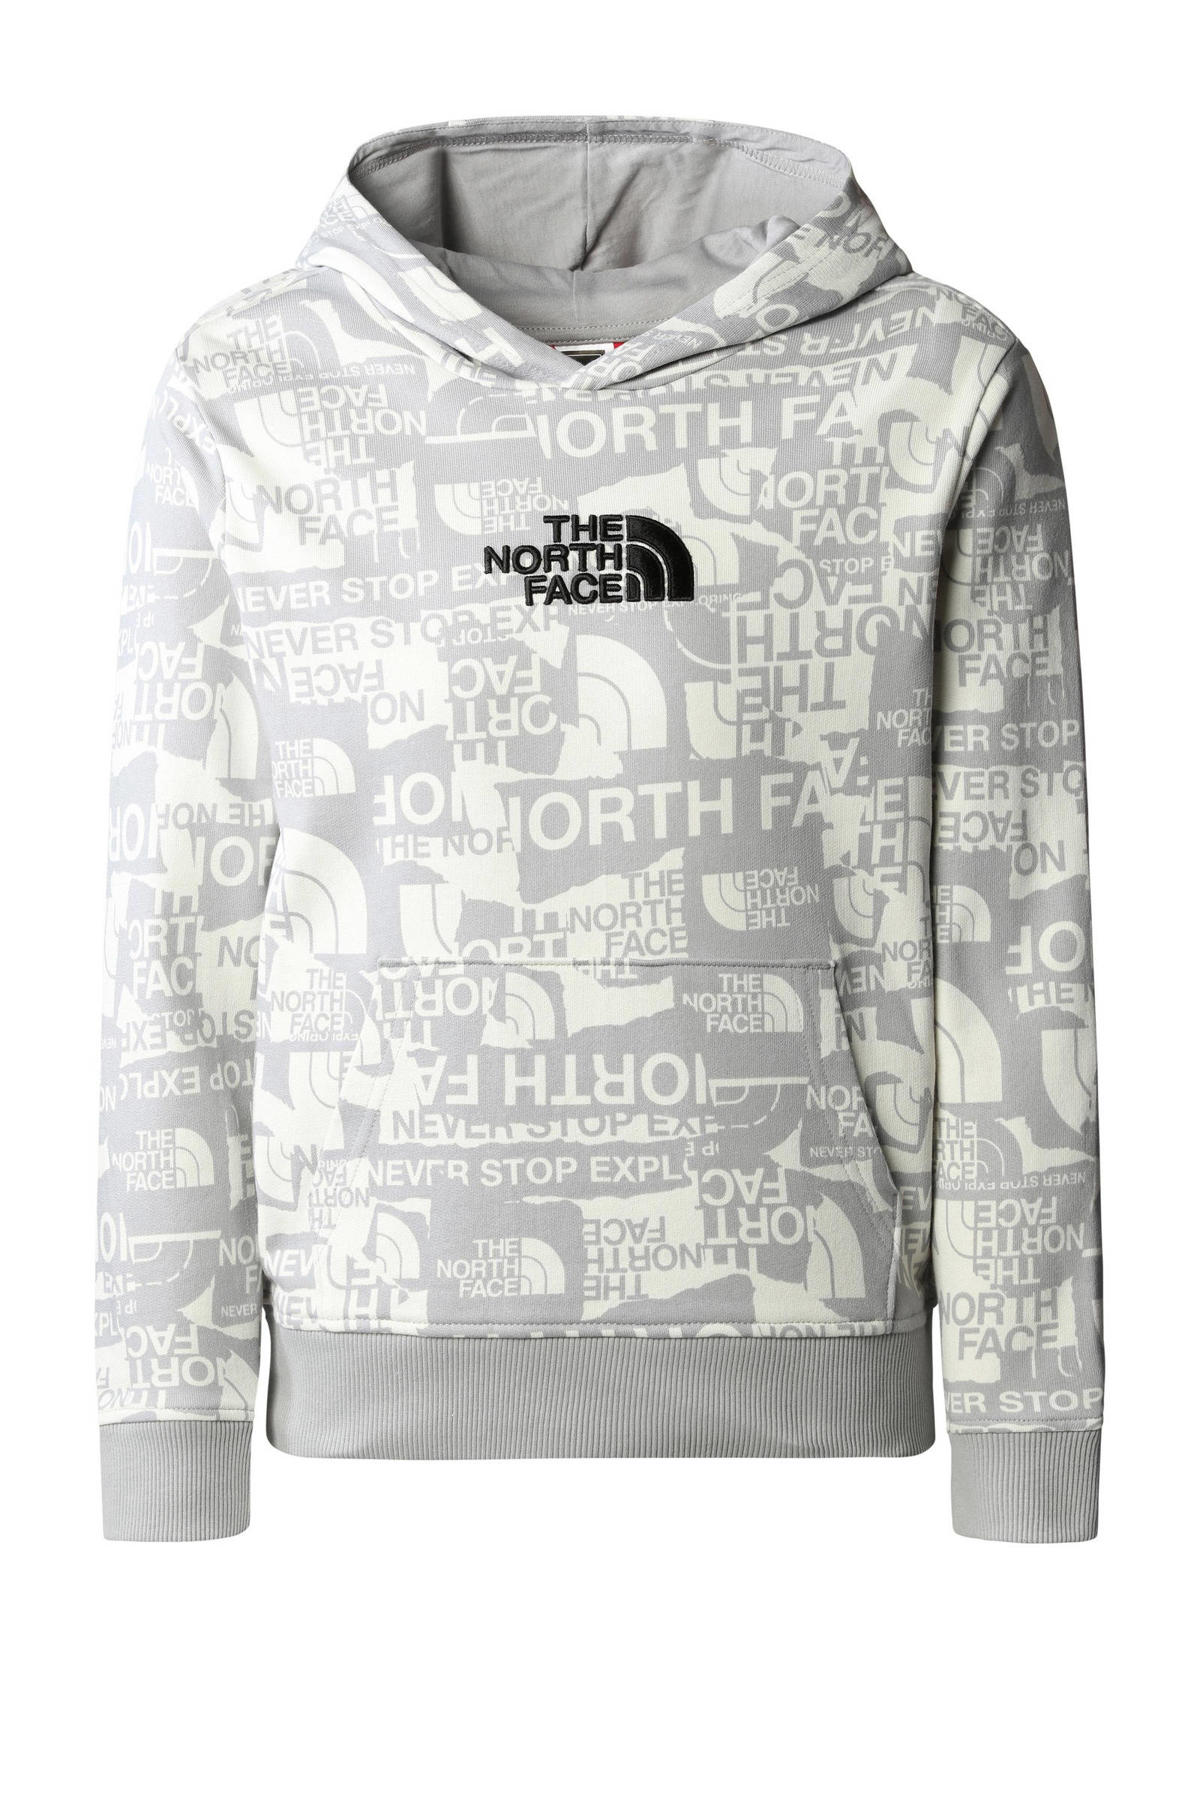 Ambtenaren cascade Bomen planten The North Face sweater met all over print grijs/wit | wehkamp